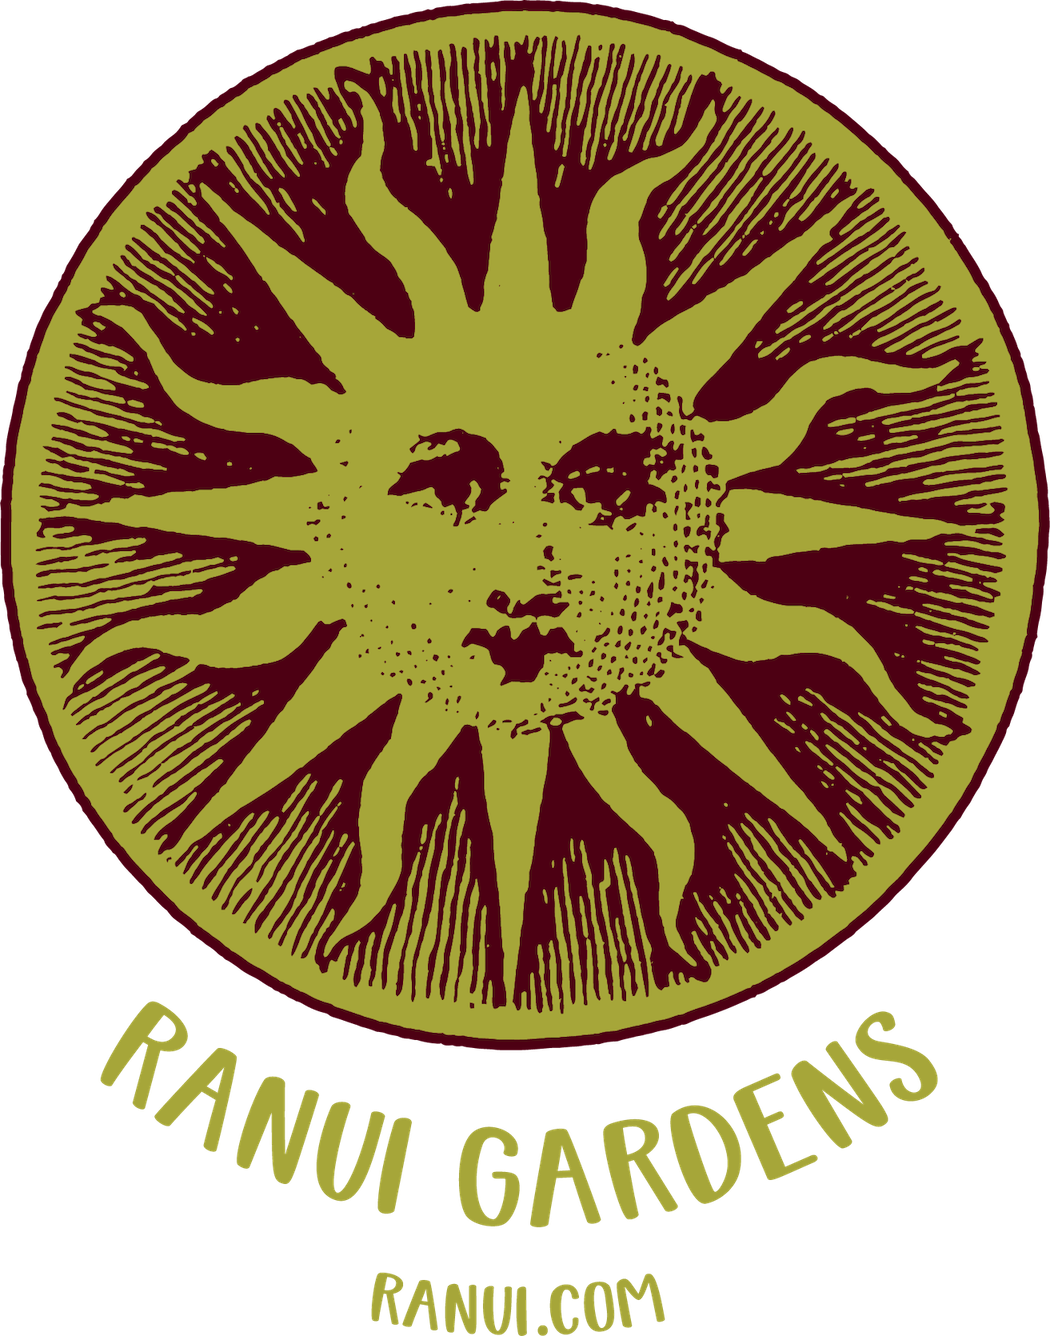 Ranui Gardens